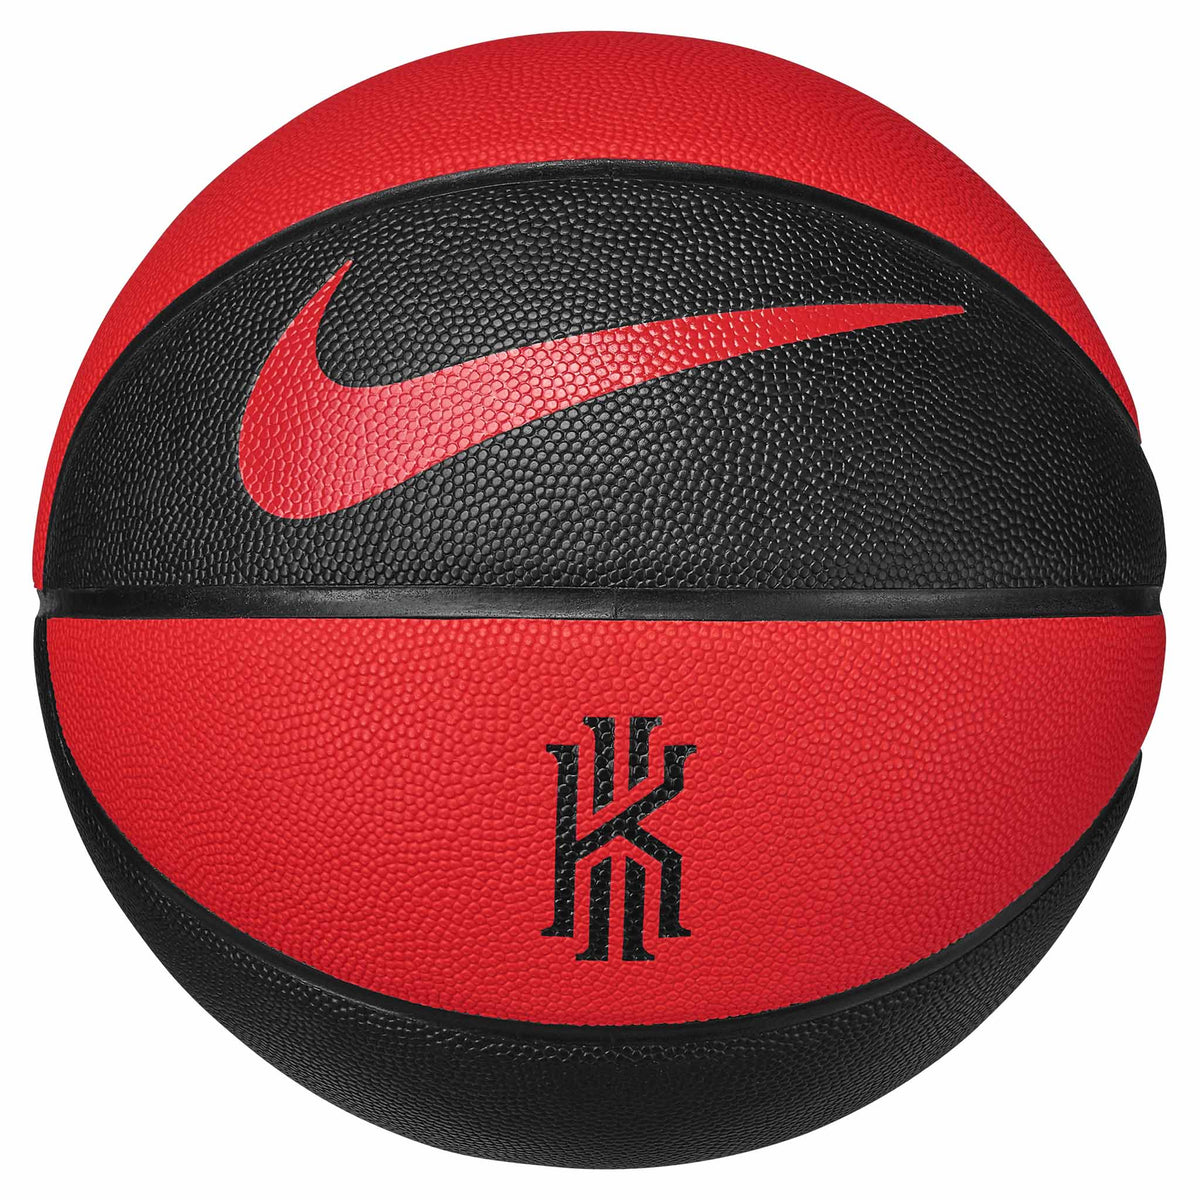 Ballon de basketball Nike Crossover Kyrie Irving 8P Graphic Eye